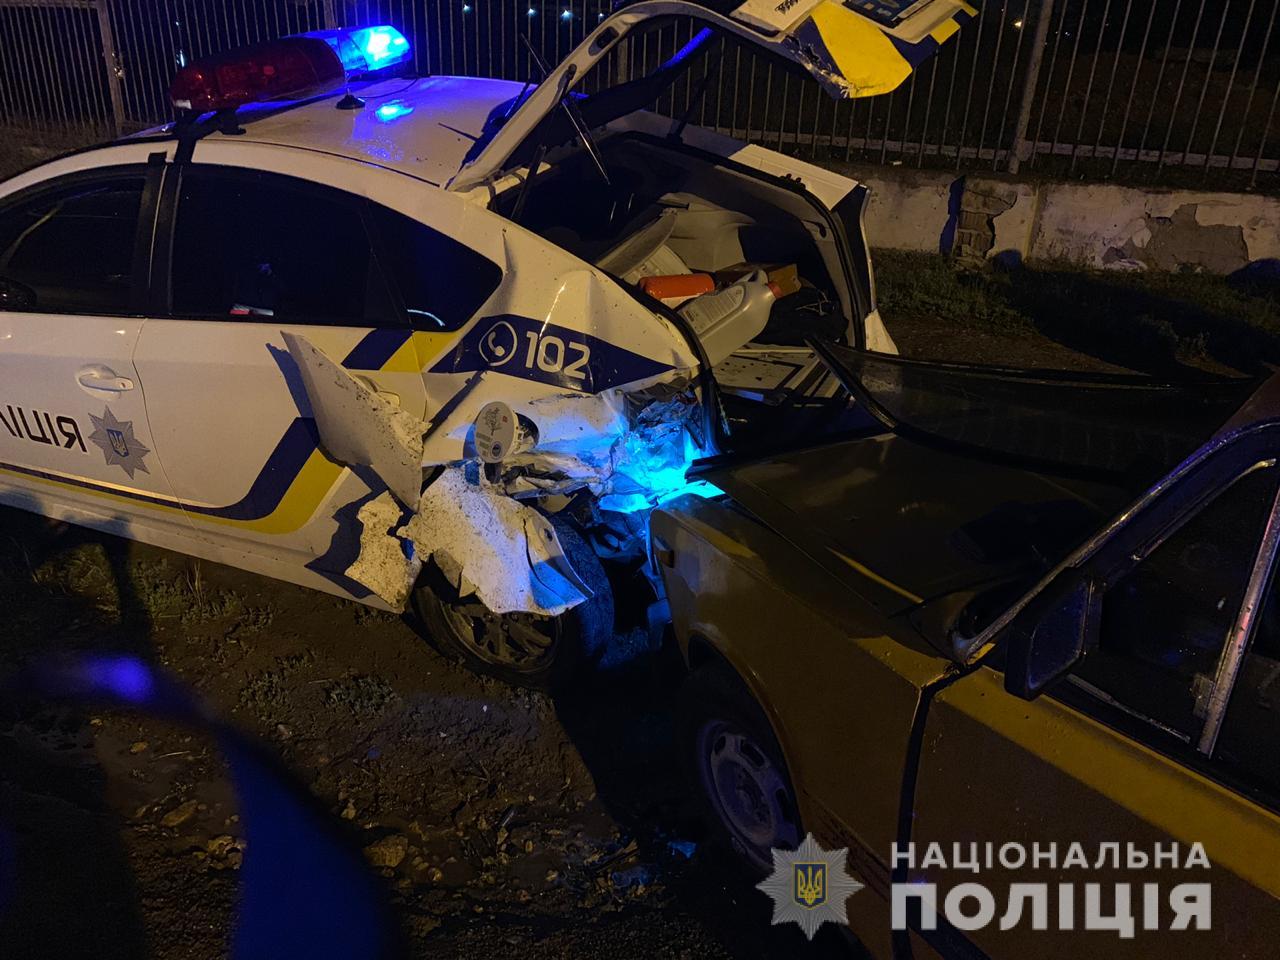 ДТП с полицейским автомобилем произошло в Одесской области, ранен патрульный. Фото: Нацполиция